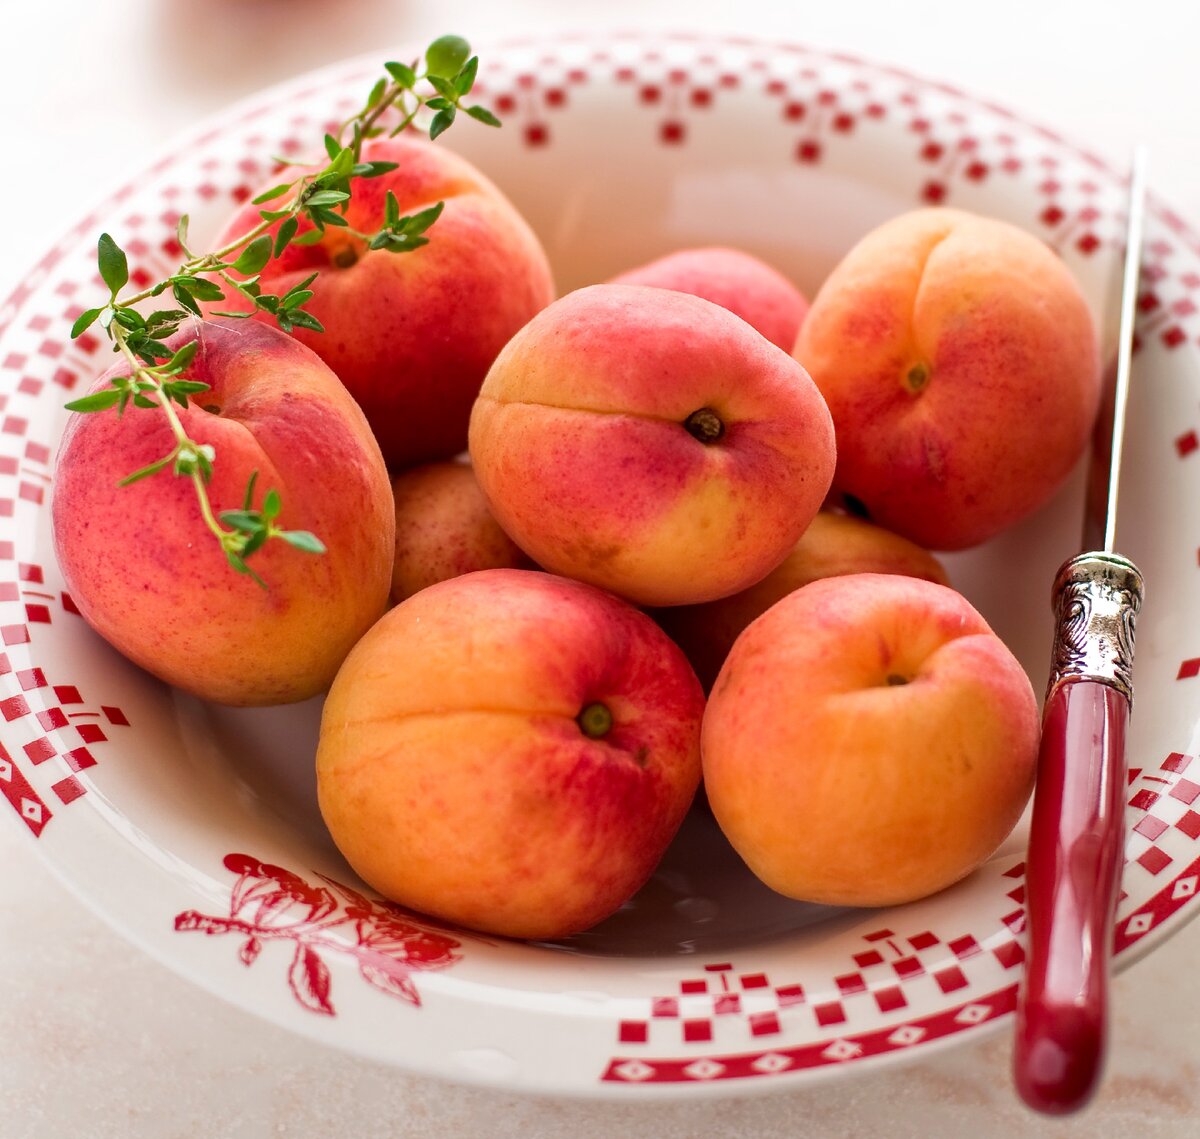 Какие фрукты уместны на Новогоднем столе 2020? Накрываем стол правильно